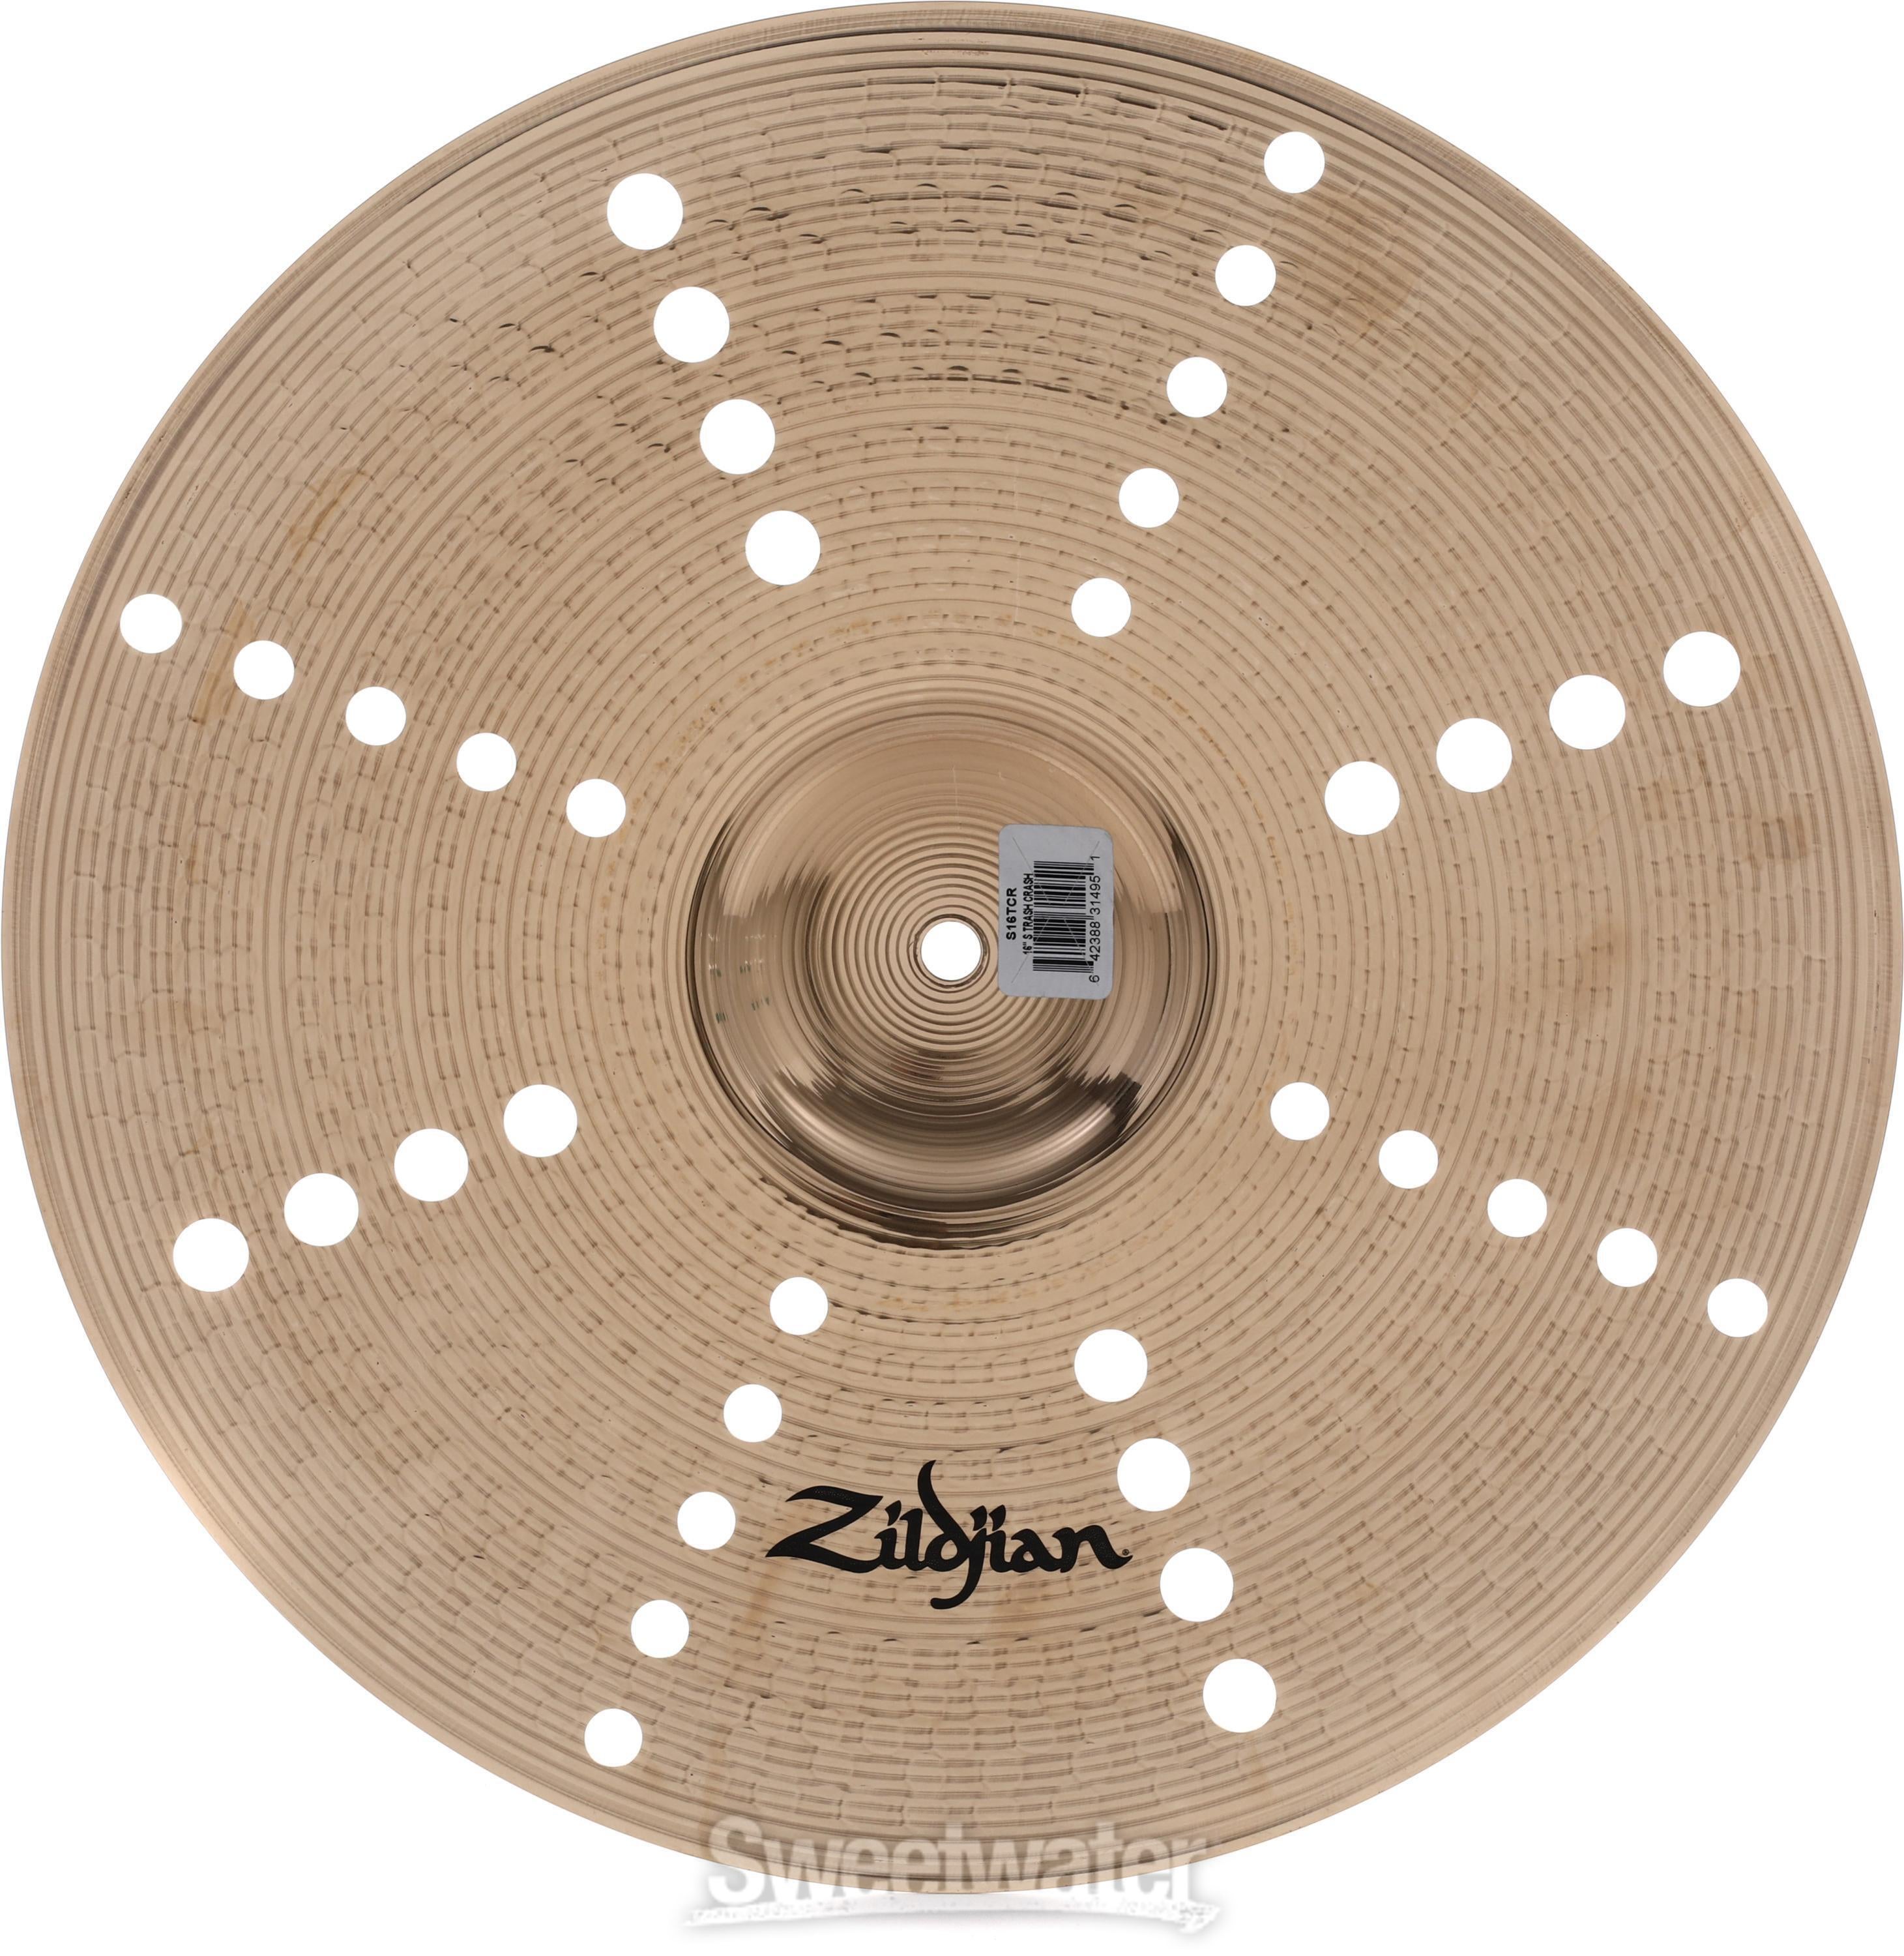 Zildjian 16 inch S Series Trash Crash Cymbal | Sweetwater